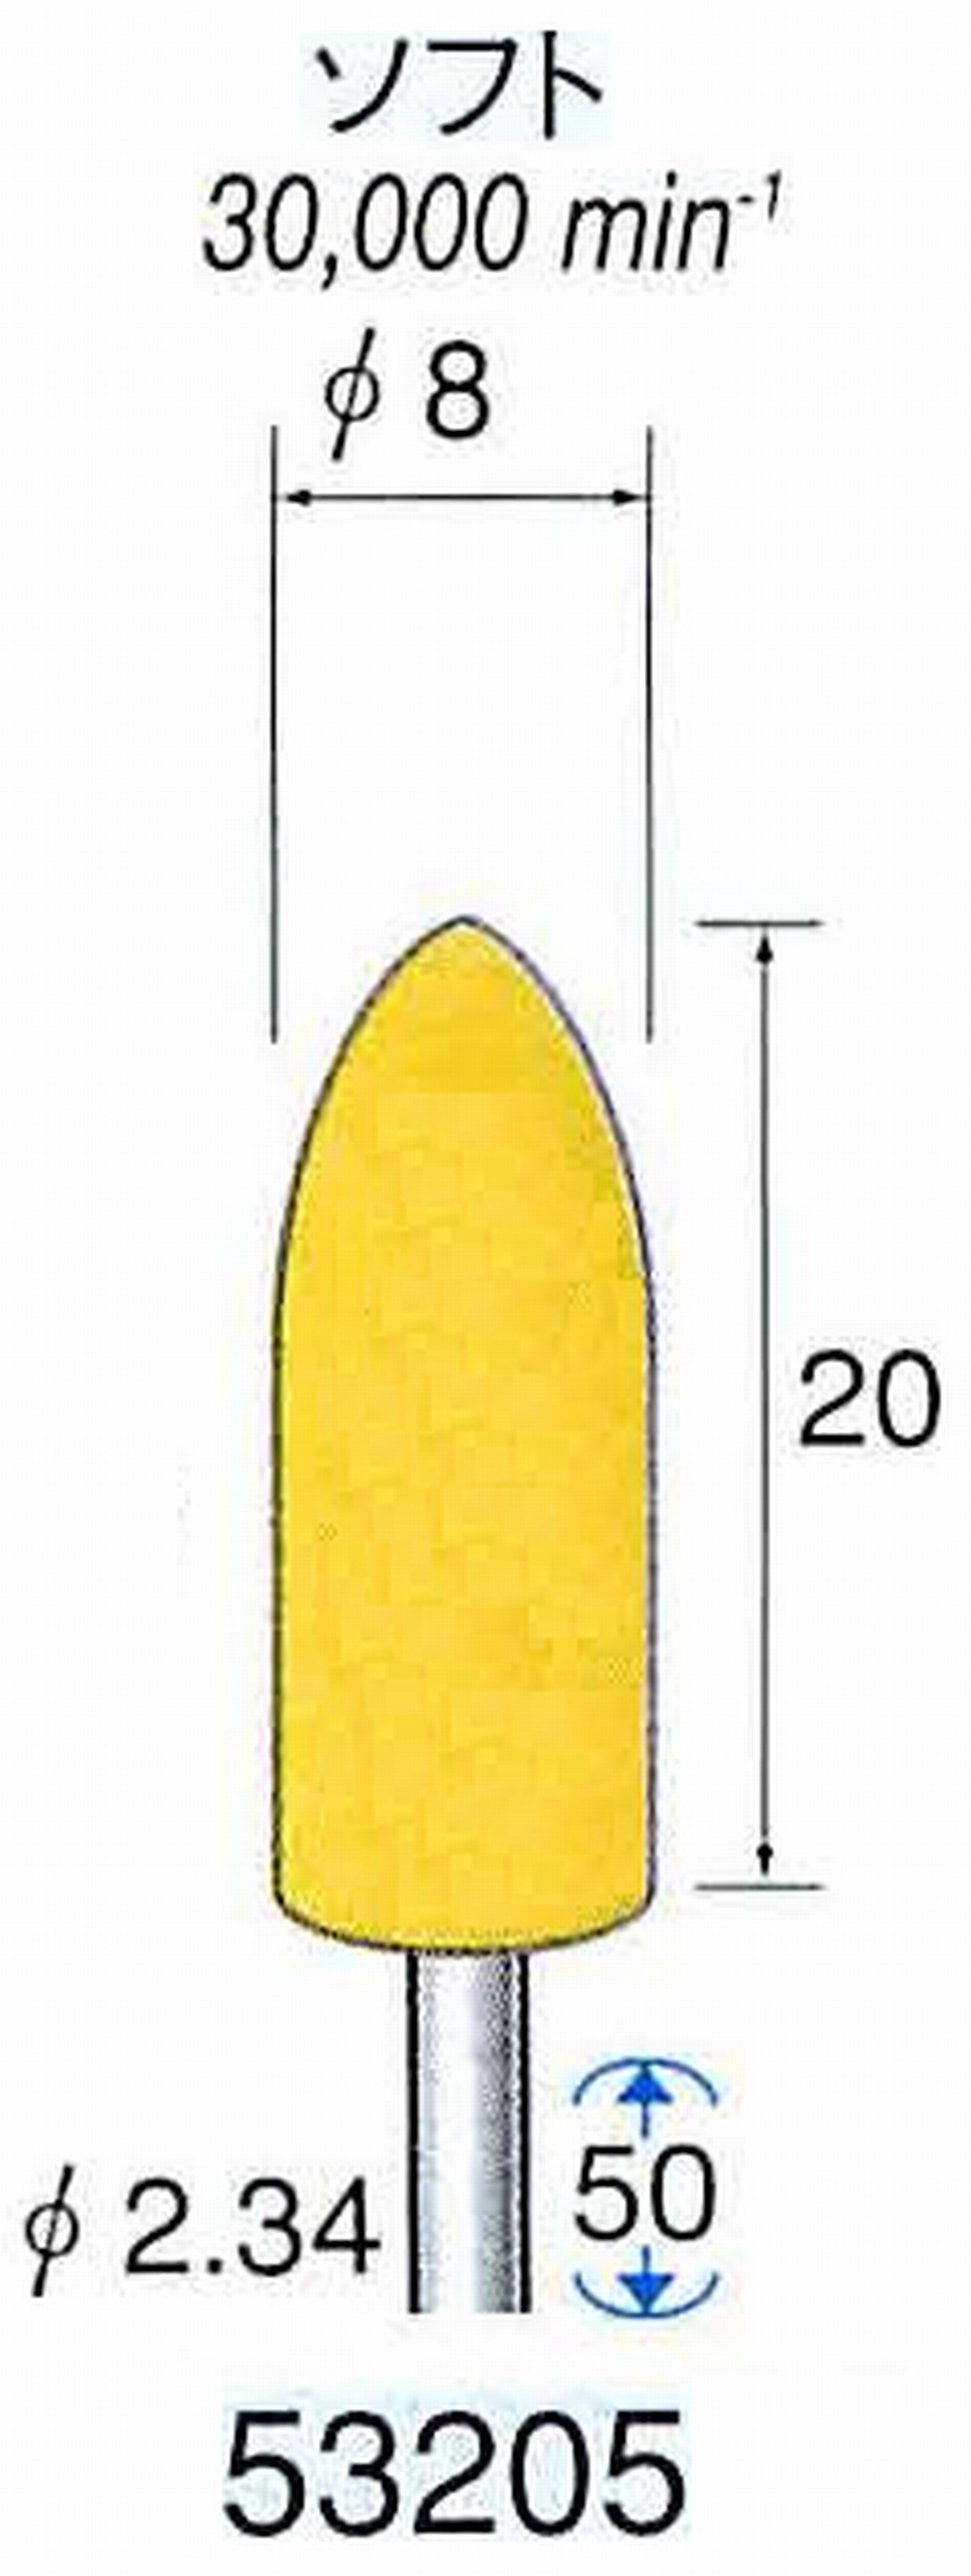 ナカニシ/NAKANISHI イエローフェルトバフ ソフト(研磨材入り) WA(アルミナ)含浸タイプ 軸径(シャンク)φ2.34mm 53205